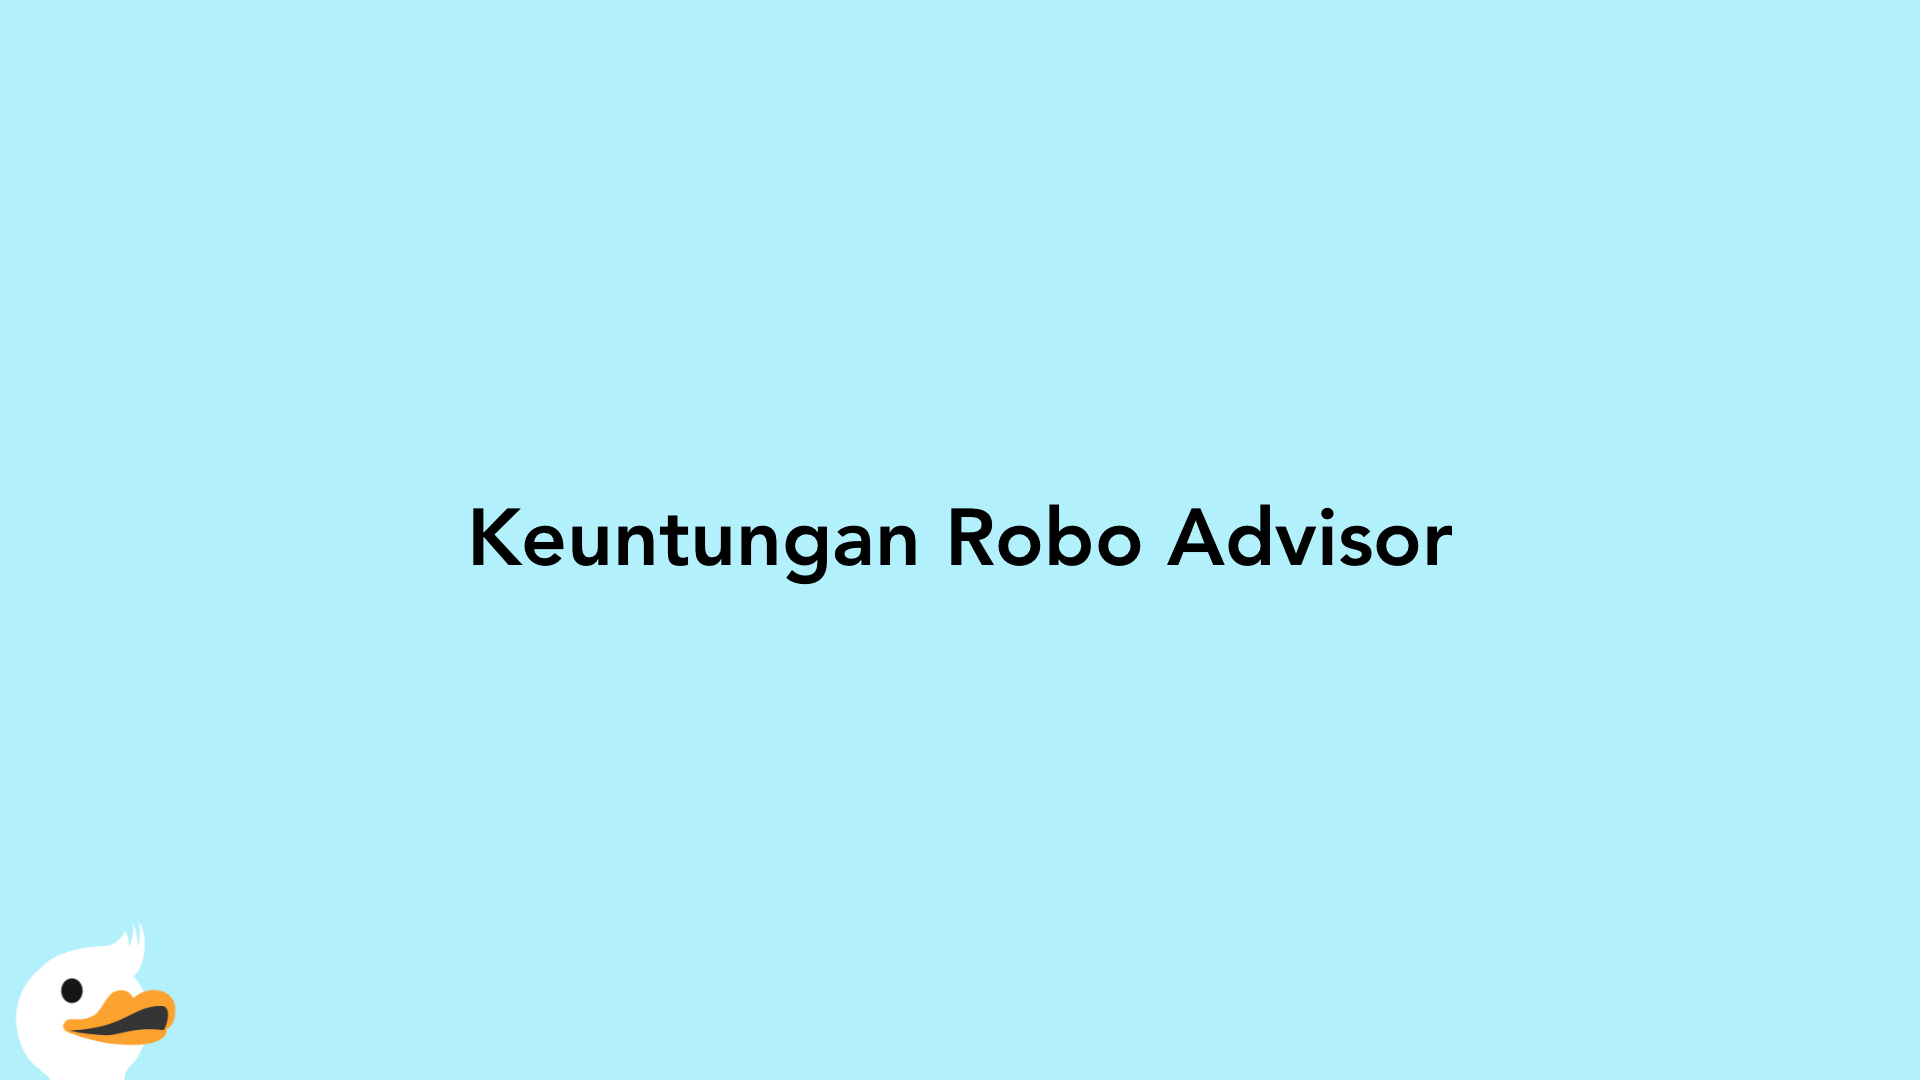 Keuntungan Robo Advisor